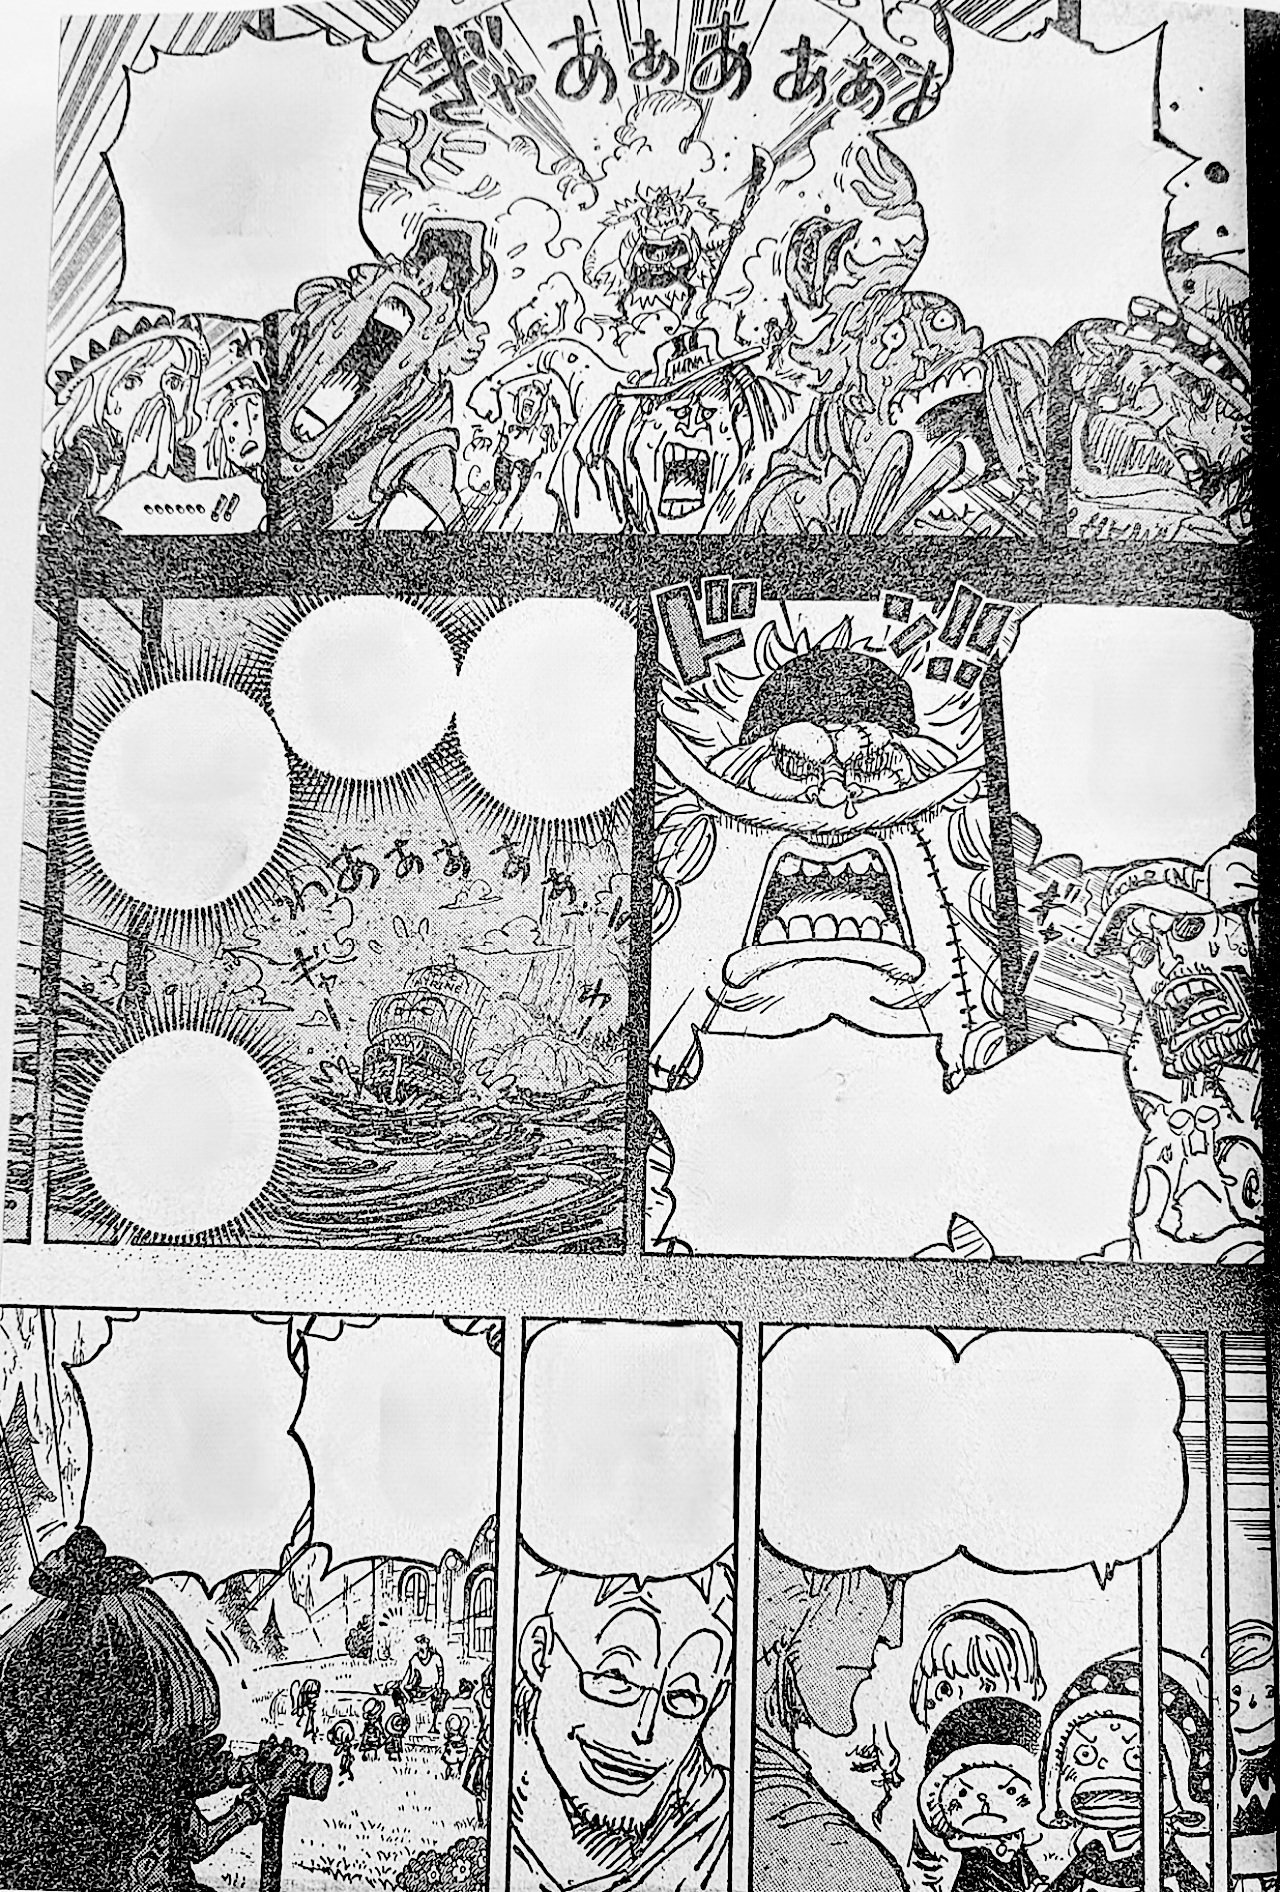 Spoiler] - 1037 Spoiler Metin ve Resimleri  One Piece Türkiye Fan Sayfası, One  Piece Türkçe Manga, One Piece Bölümler, One Piece Film